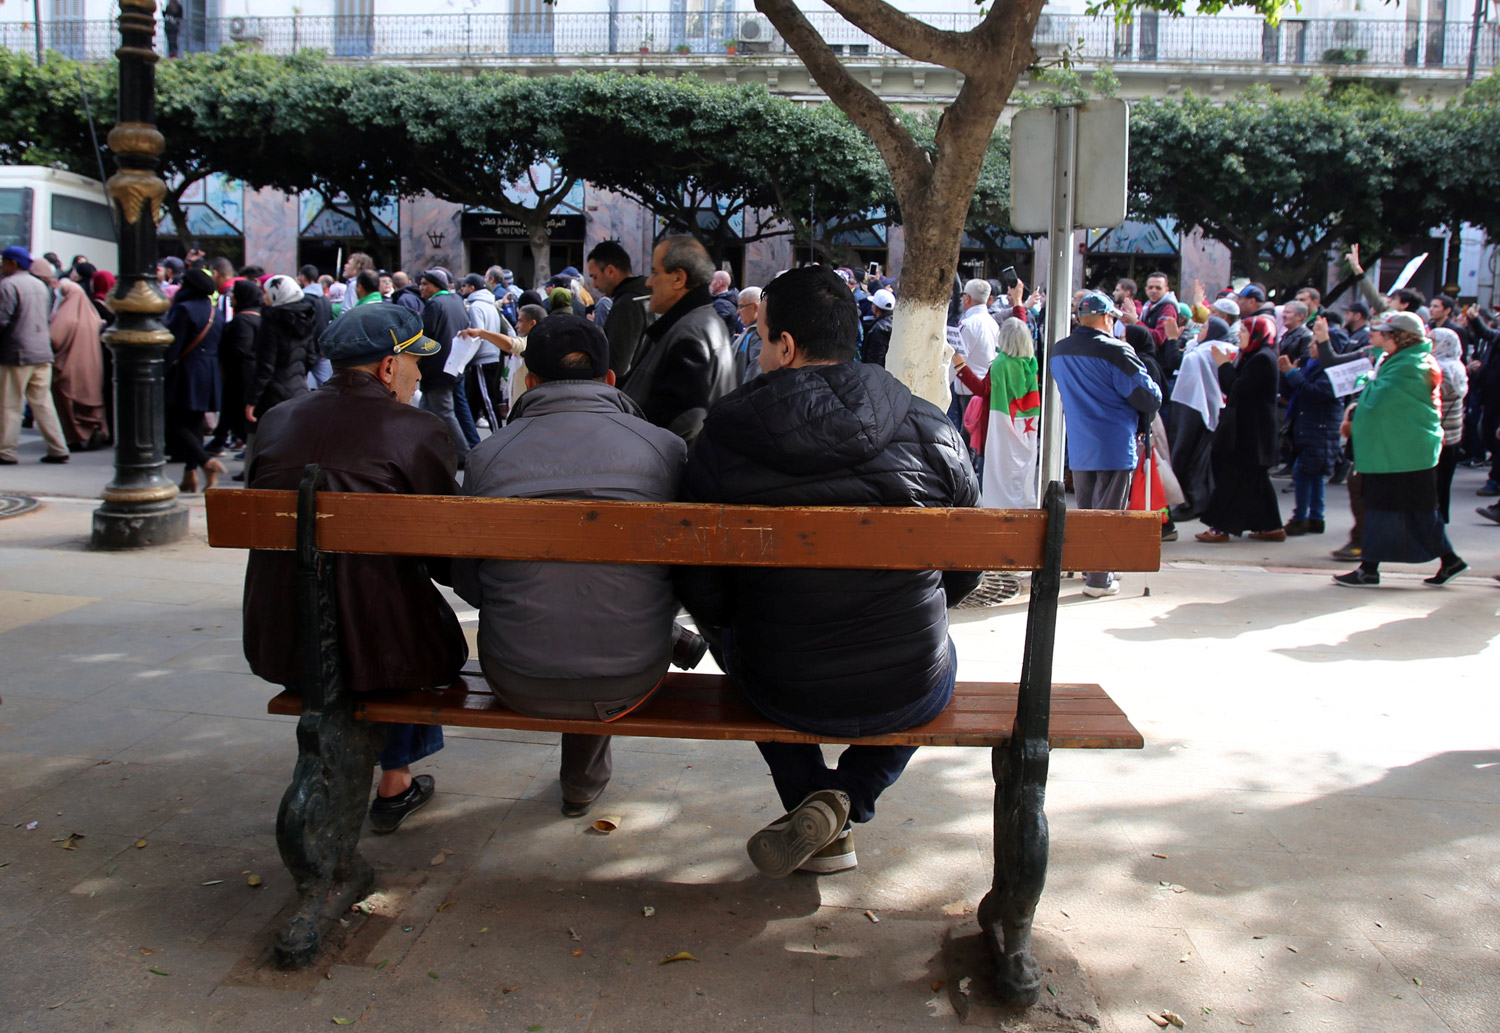 المظاهرات الشعبية لاتزال متواصلة في الجزائر